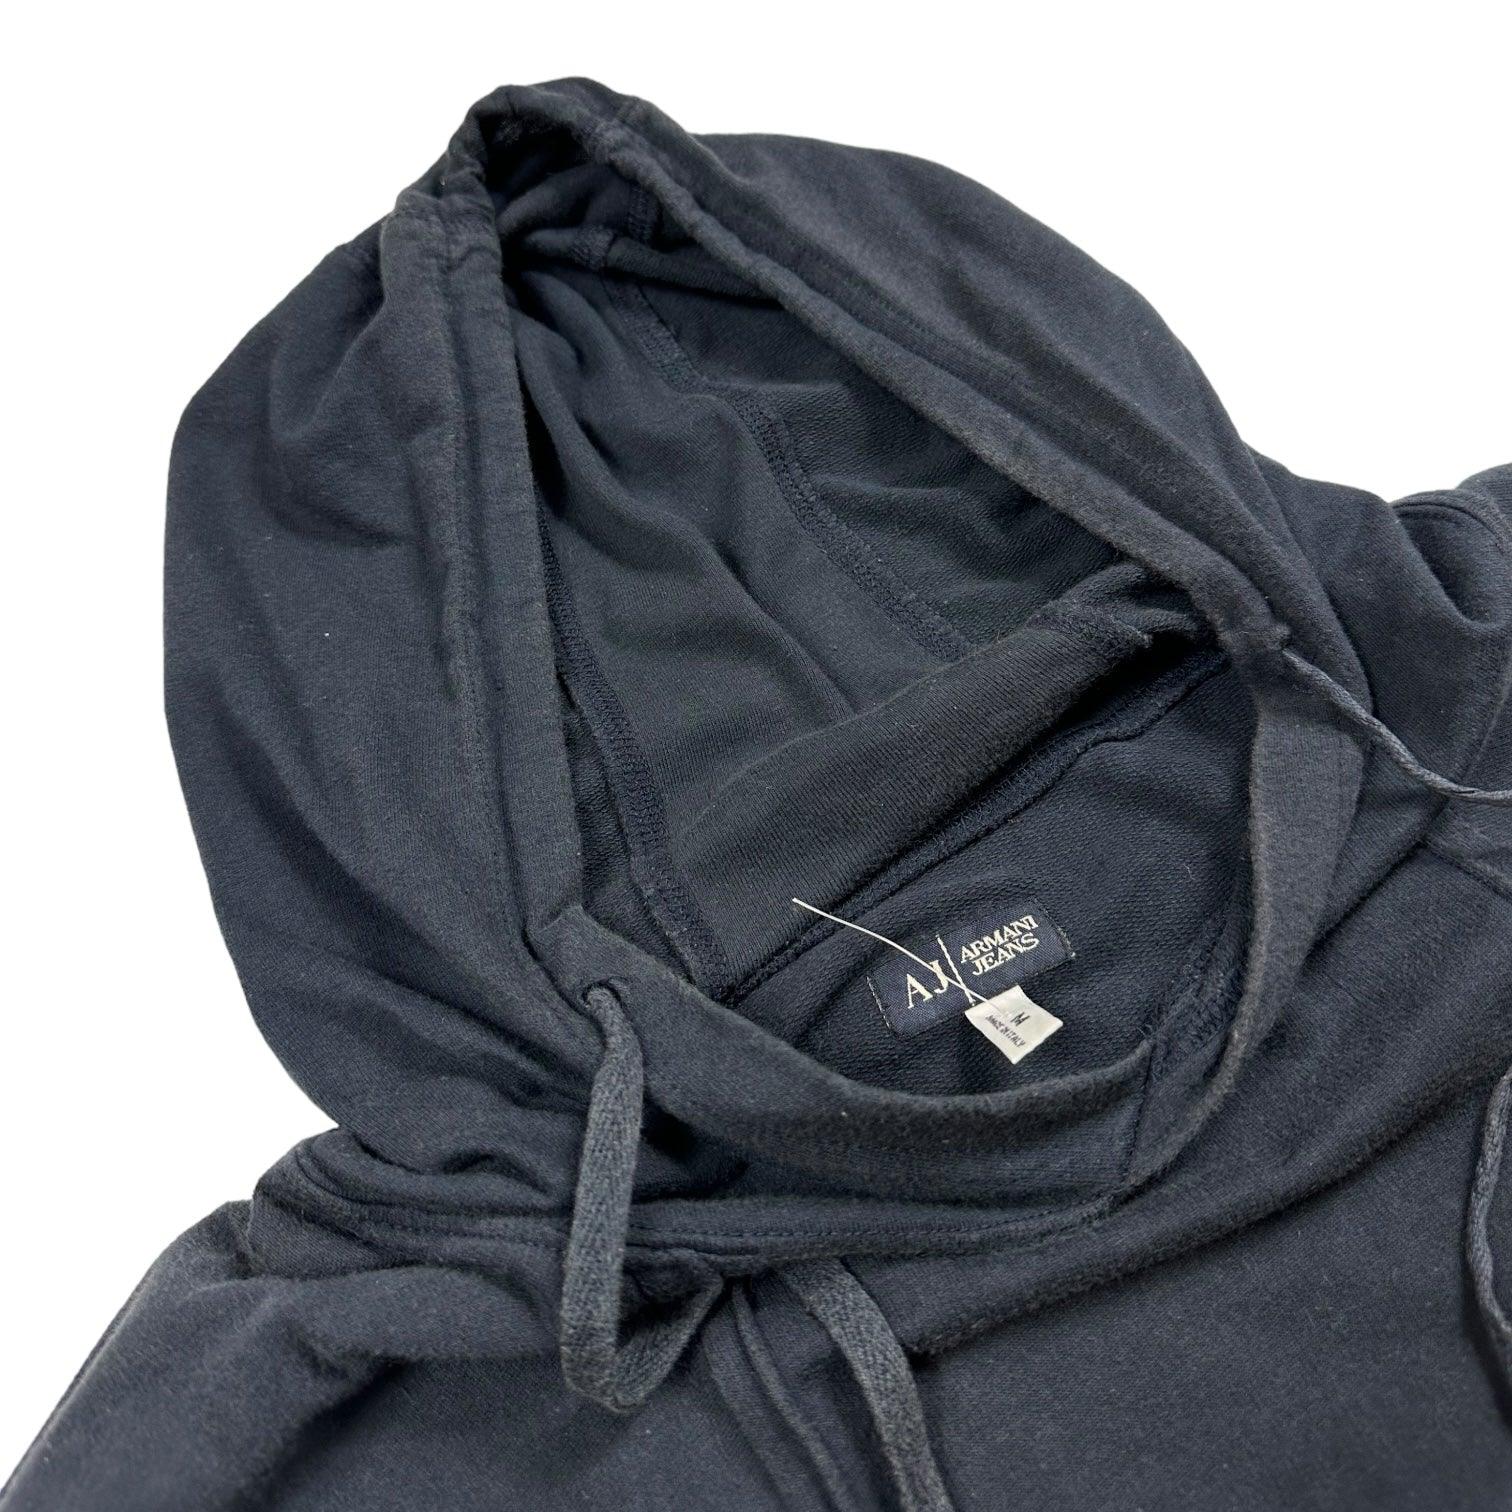 Armani Jeans Zip Pocket Navy Hoodie - Known Source